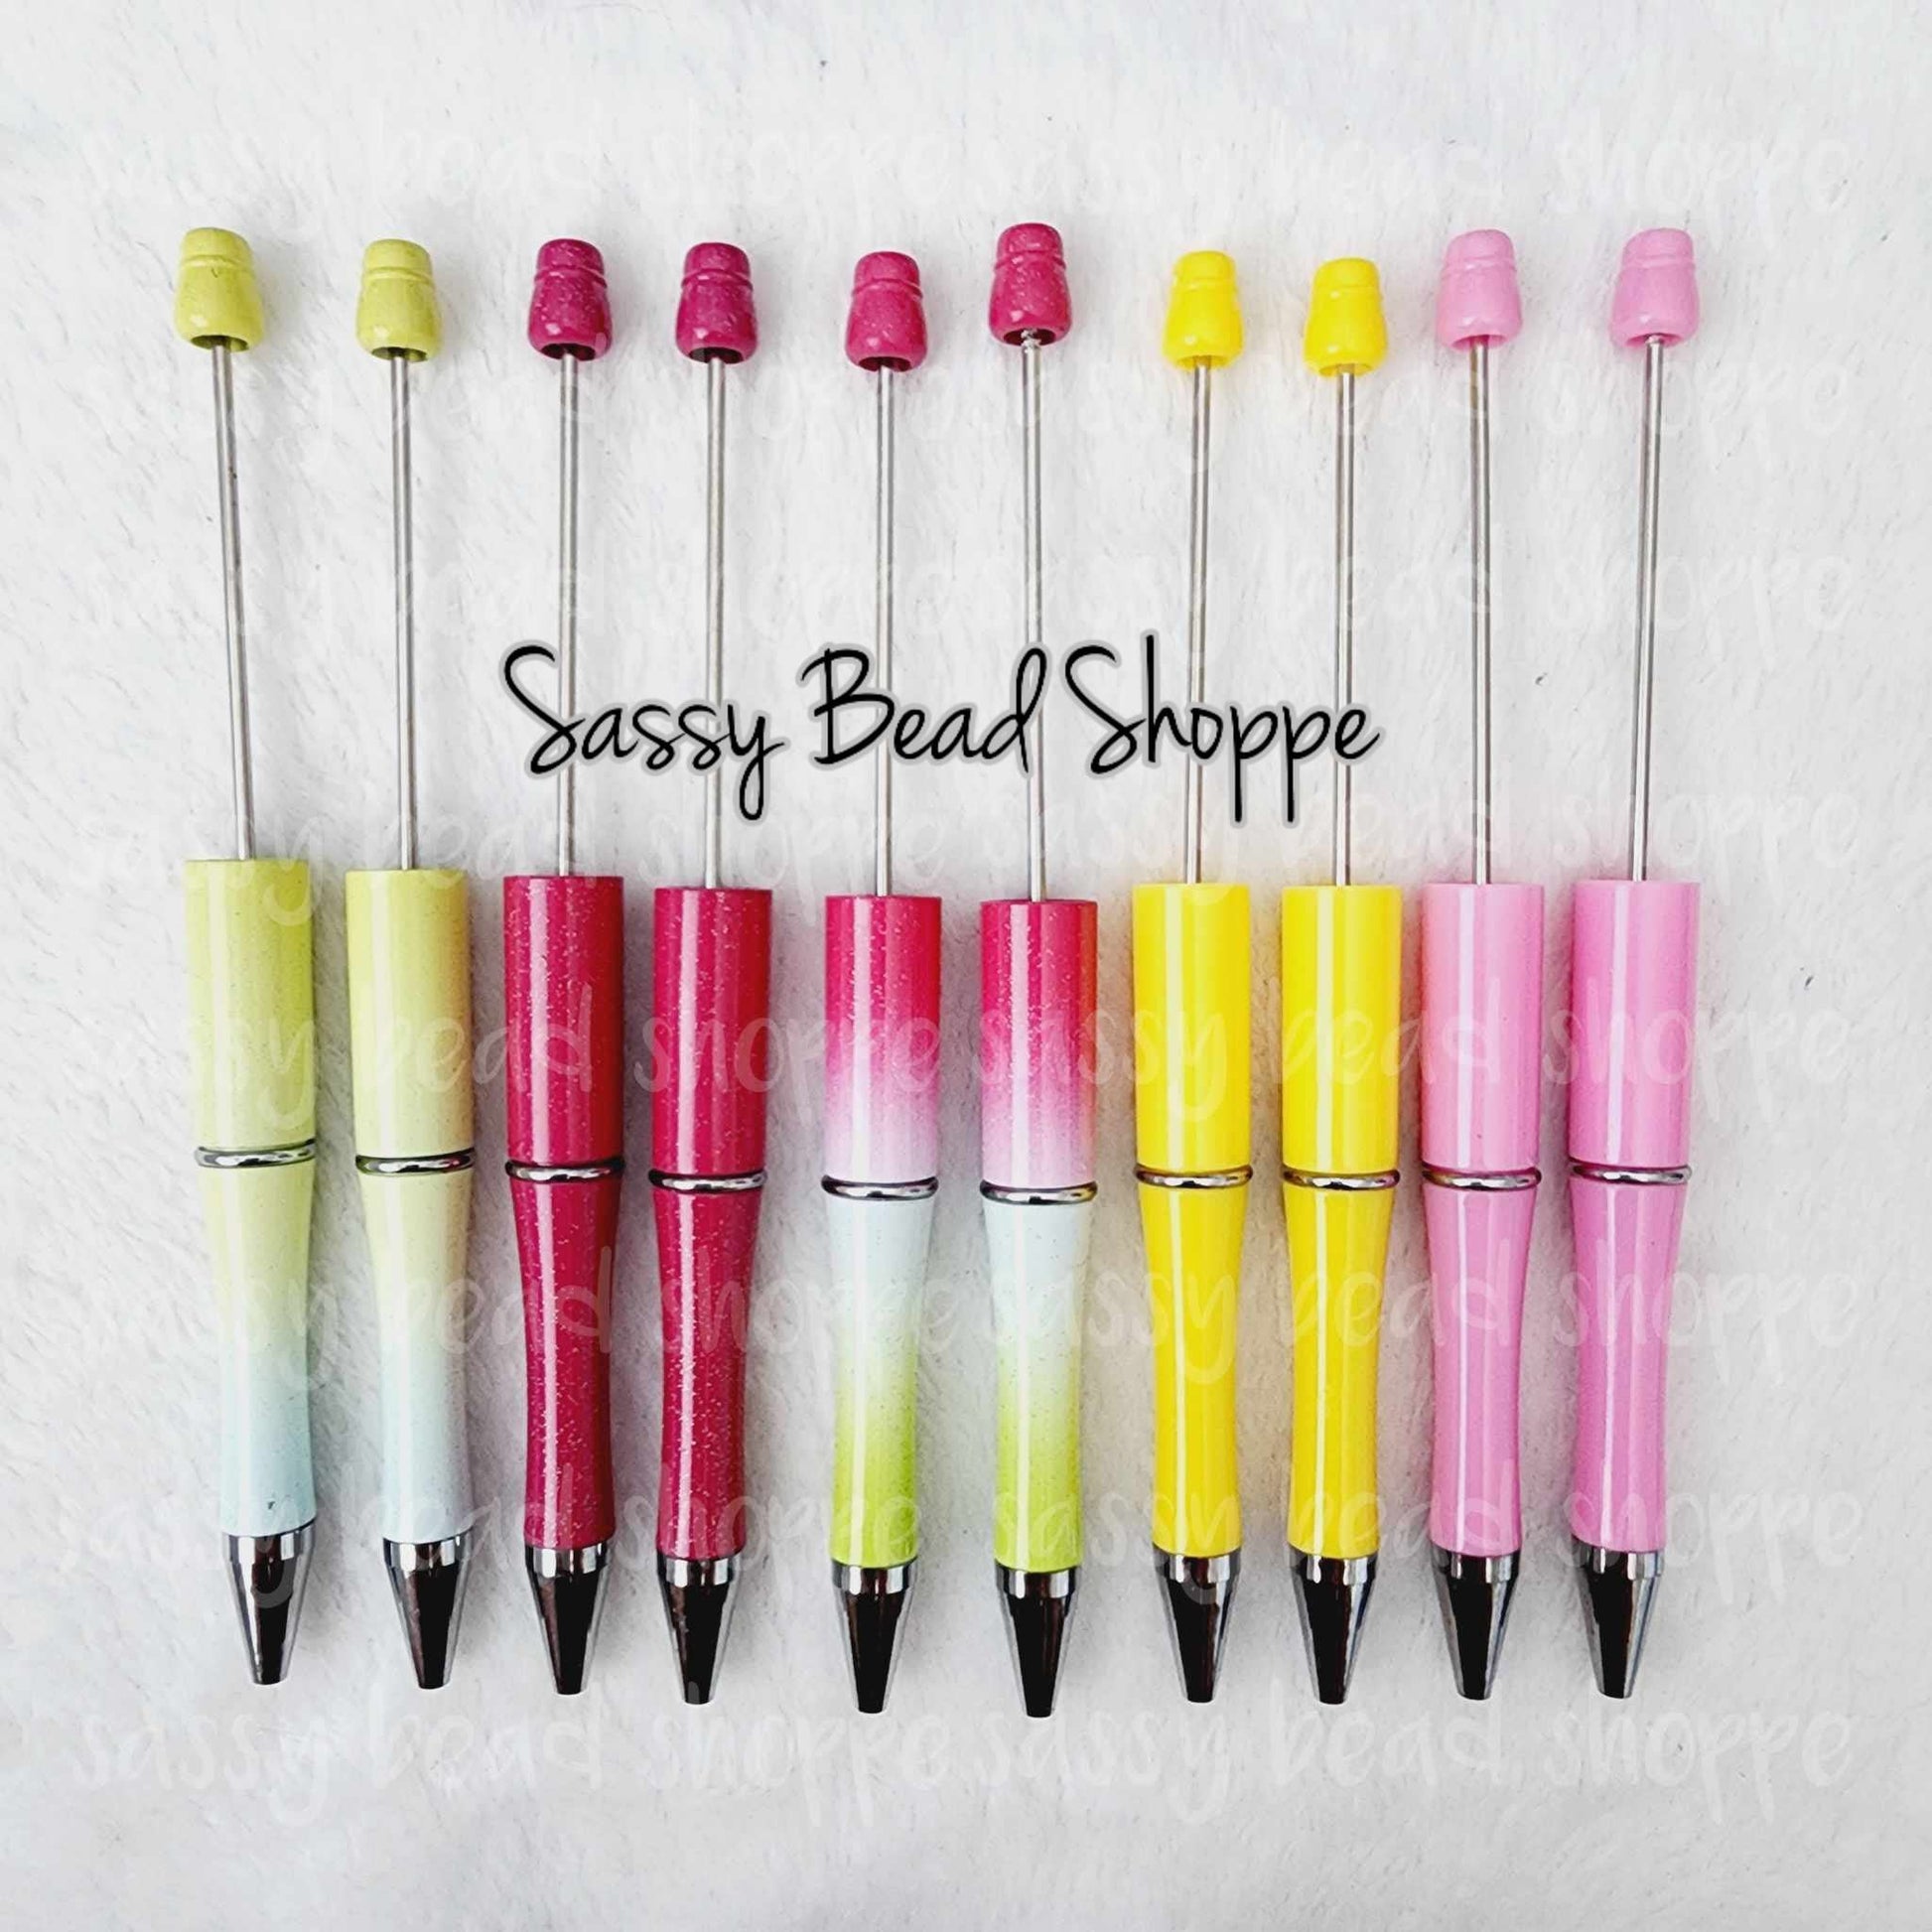 Sassy Bead Shoppe Summer Lemonade Pen Pack Pack of 10